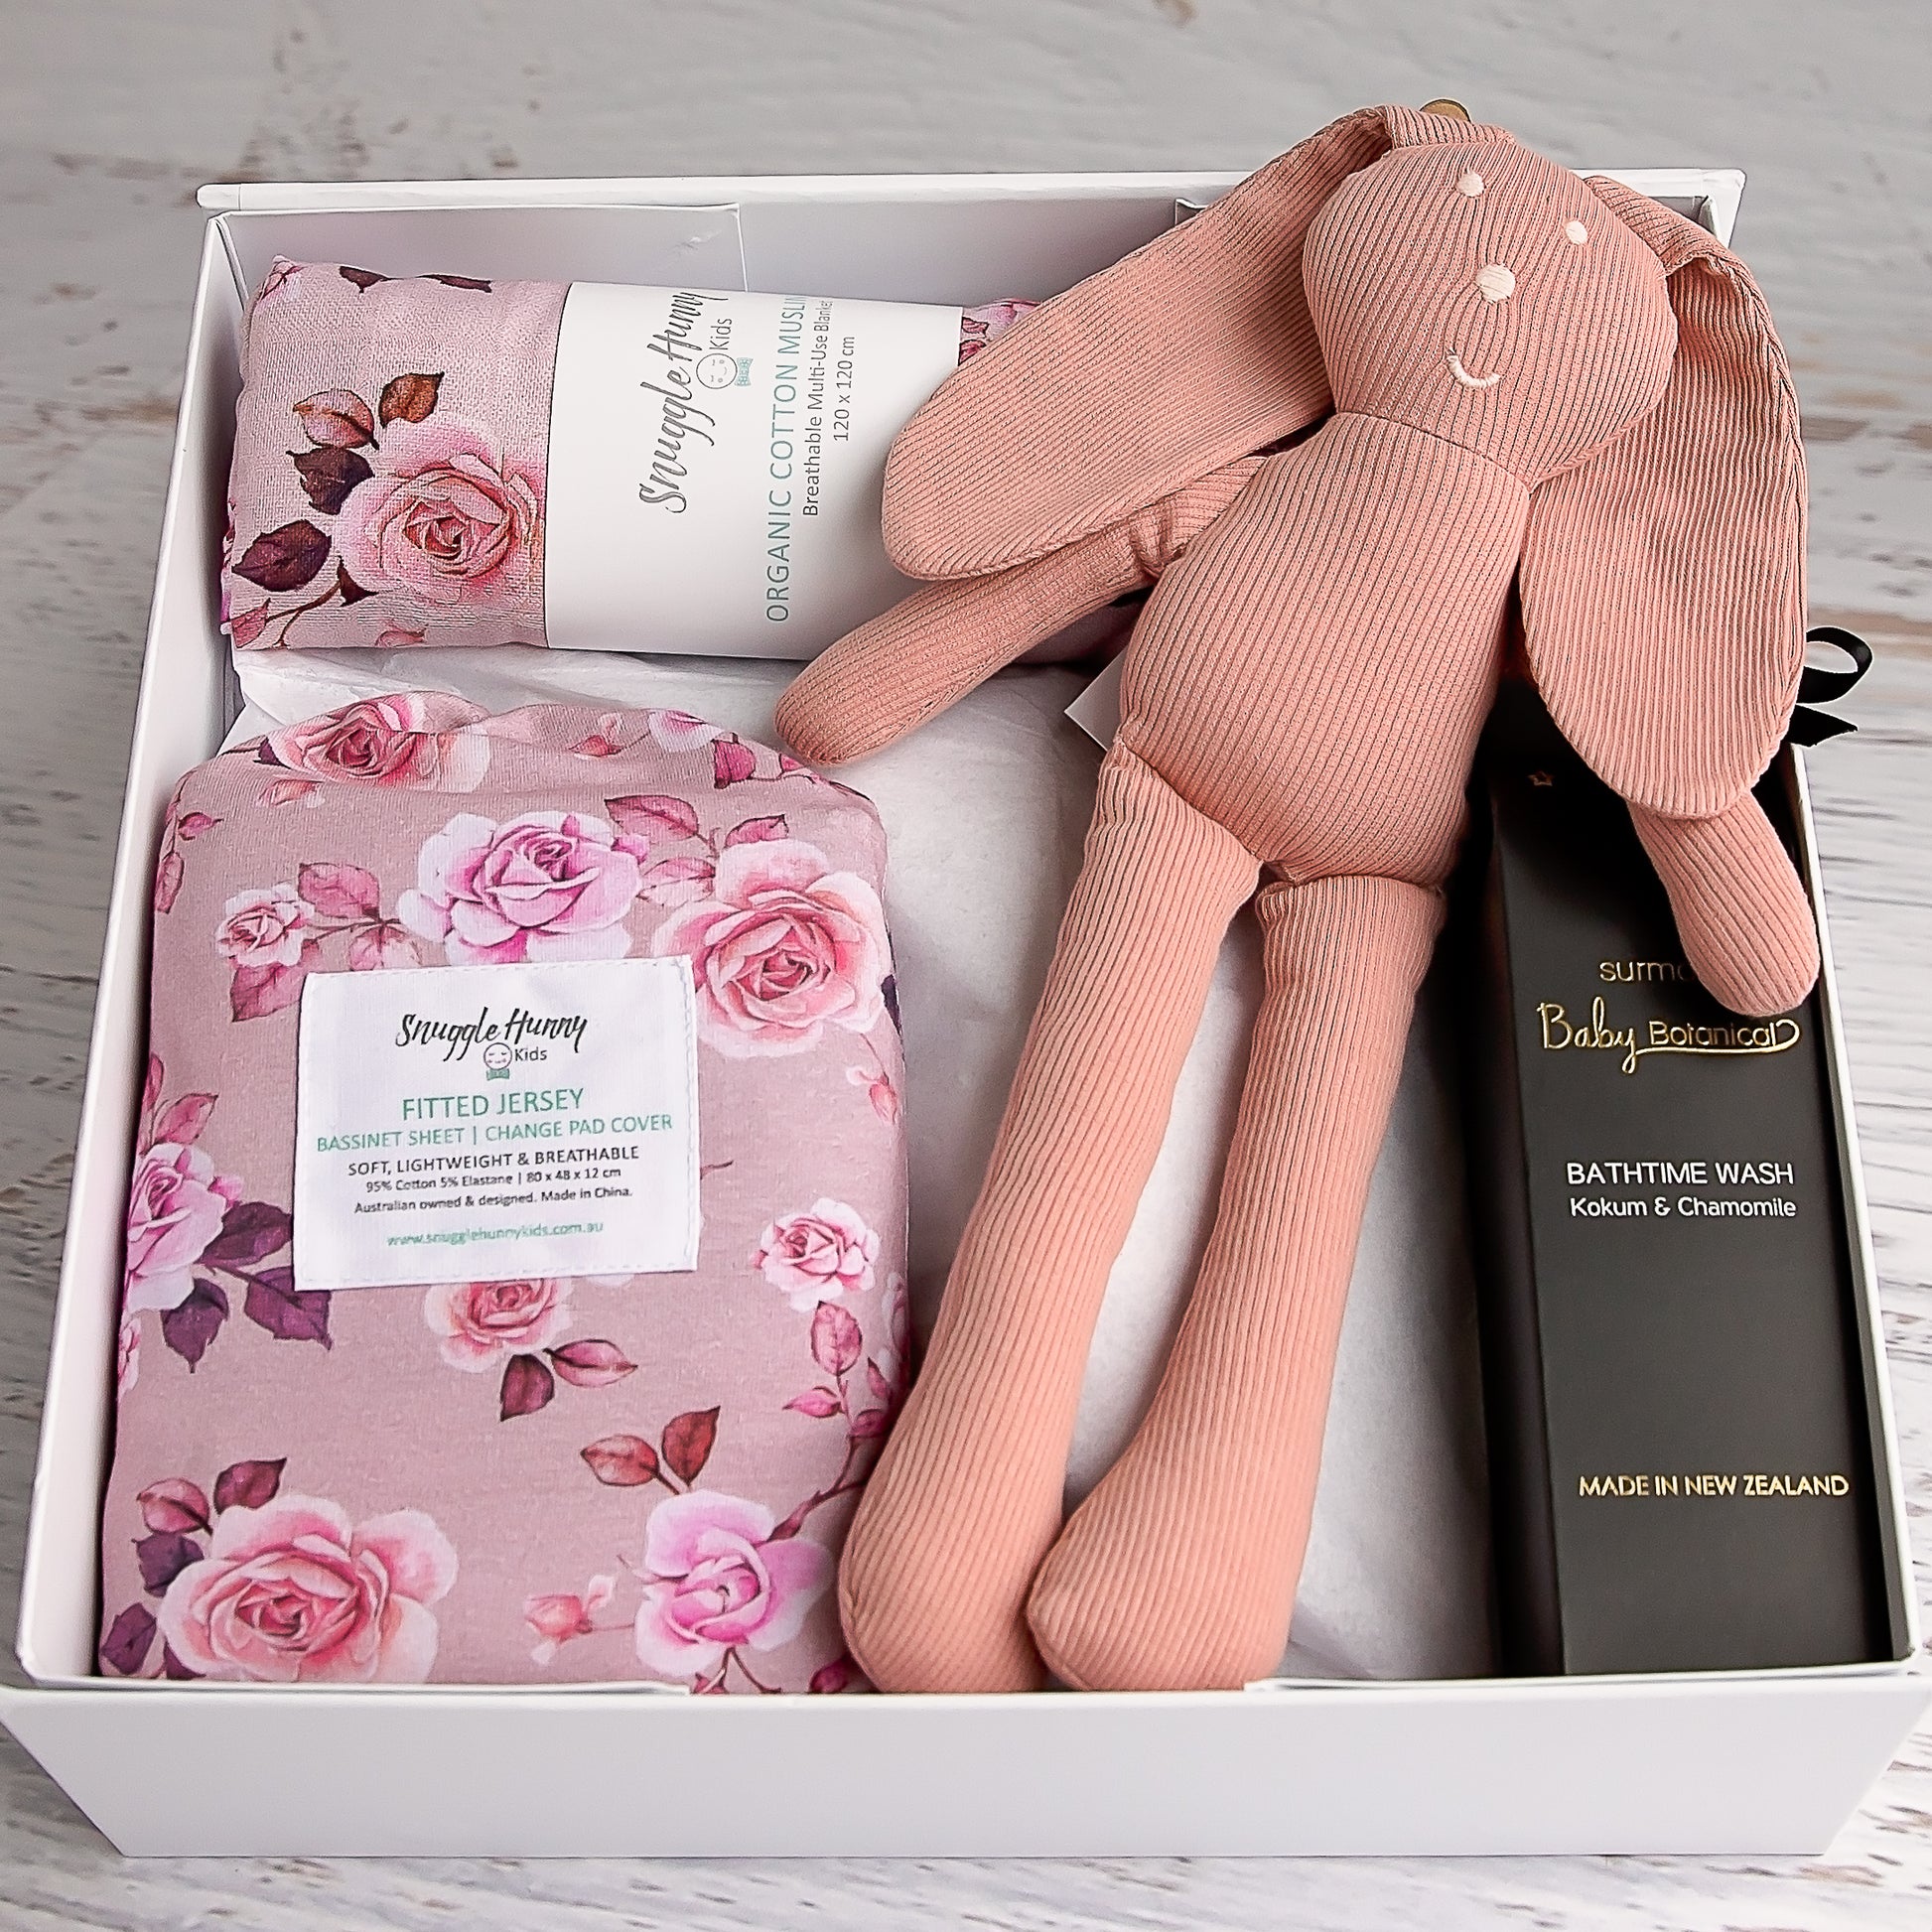 Flourish Maternity online NZ mum and baby store - Baby girl gift box